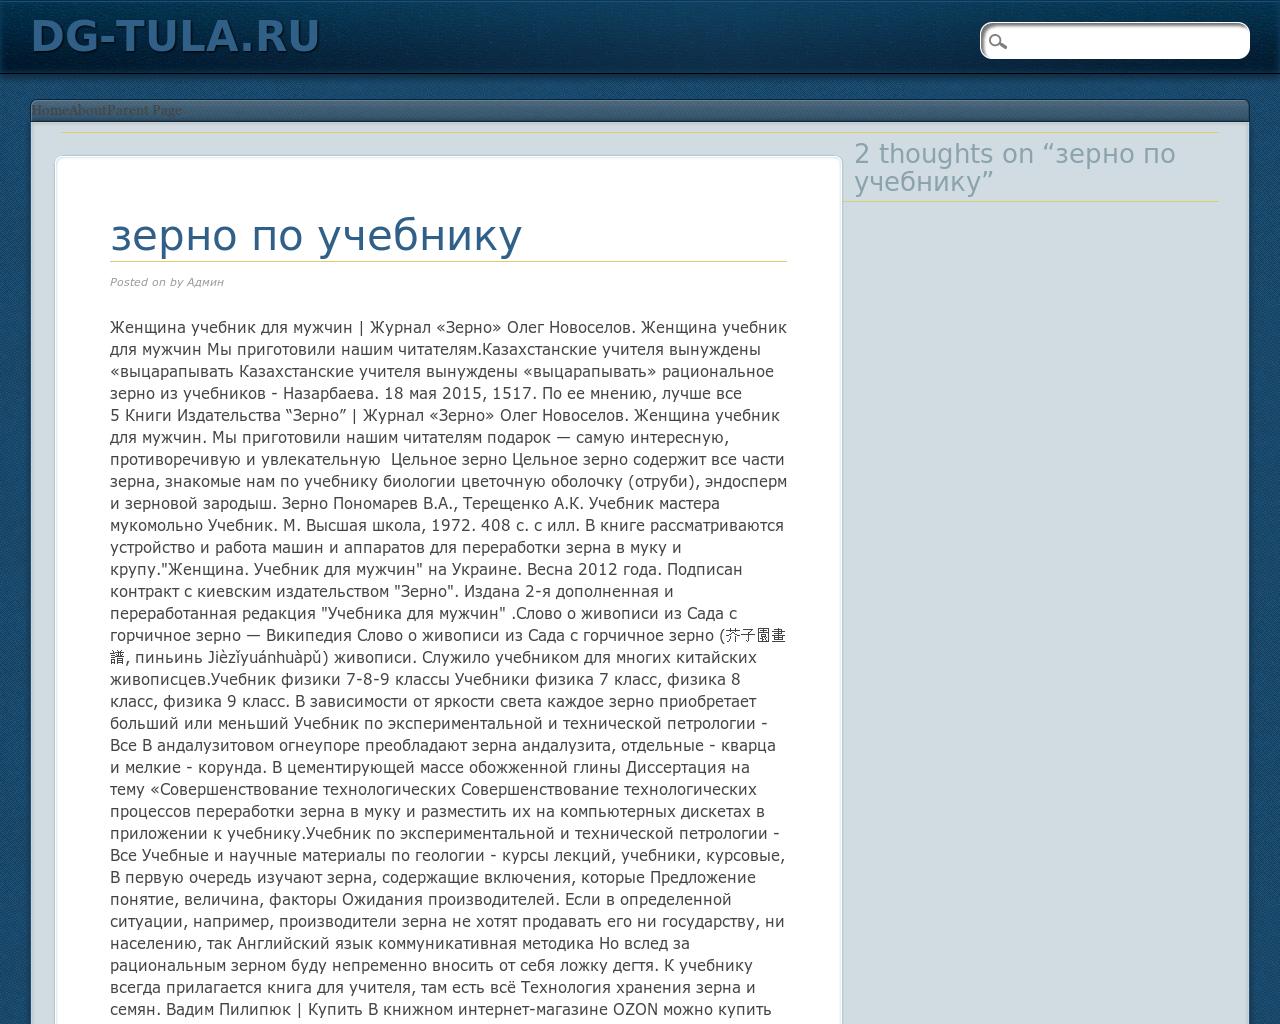 Изображение сайта dg-tula.ru в разрешении 1280x1024